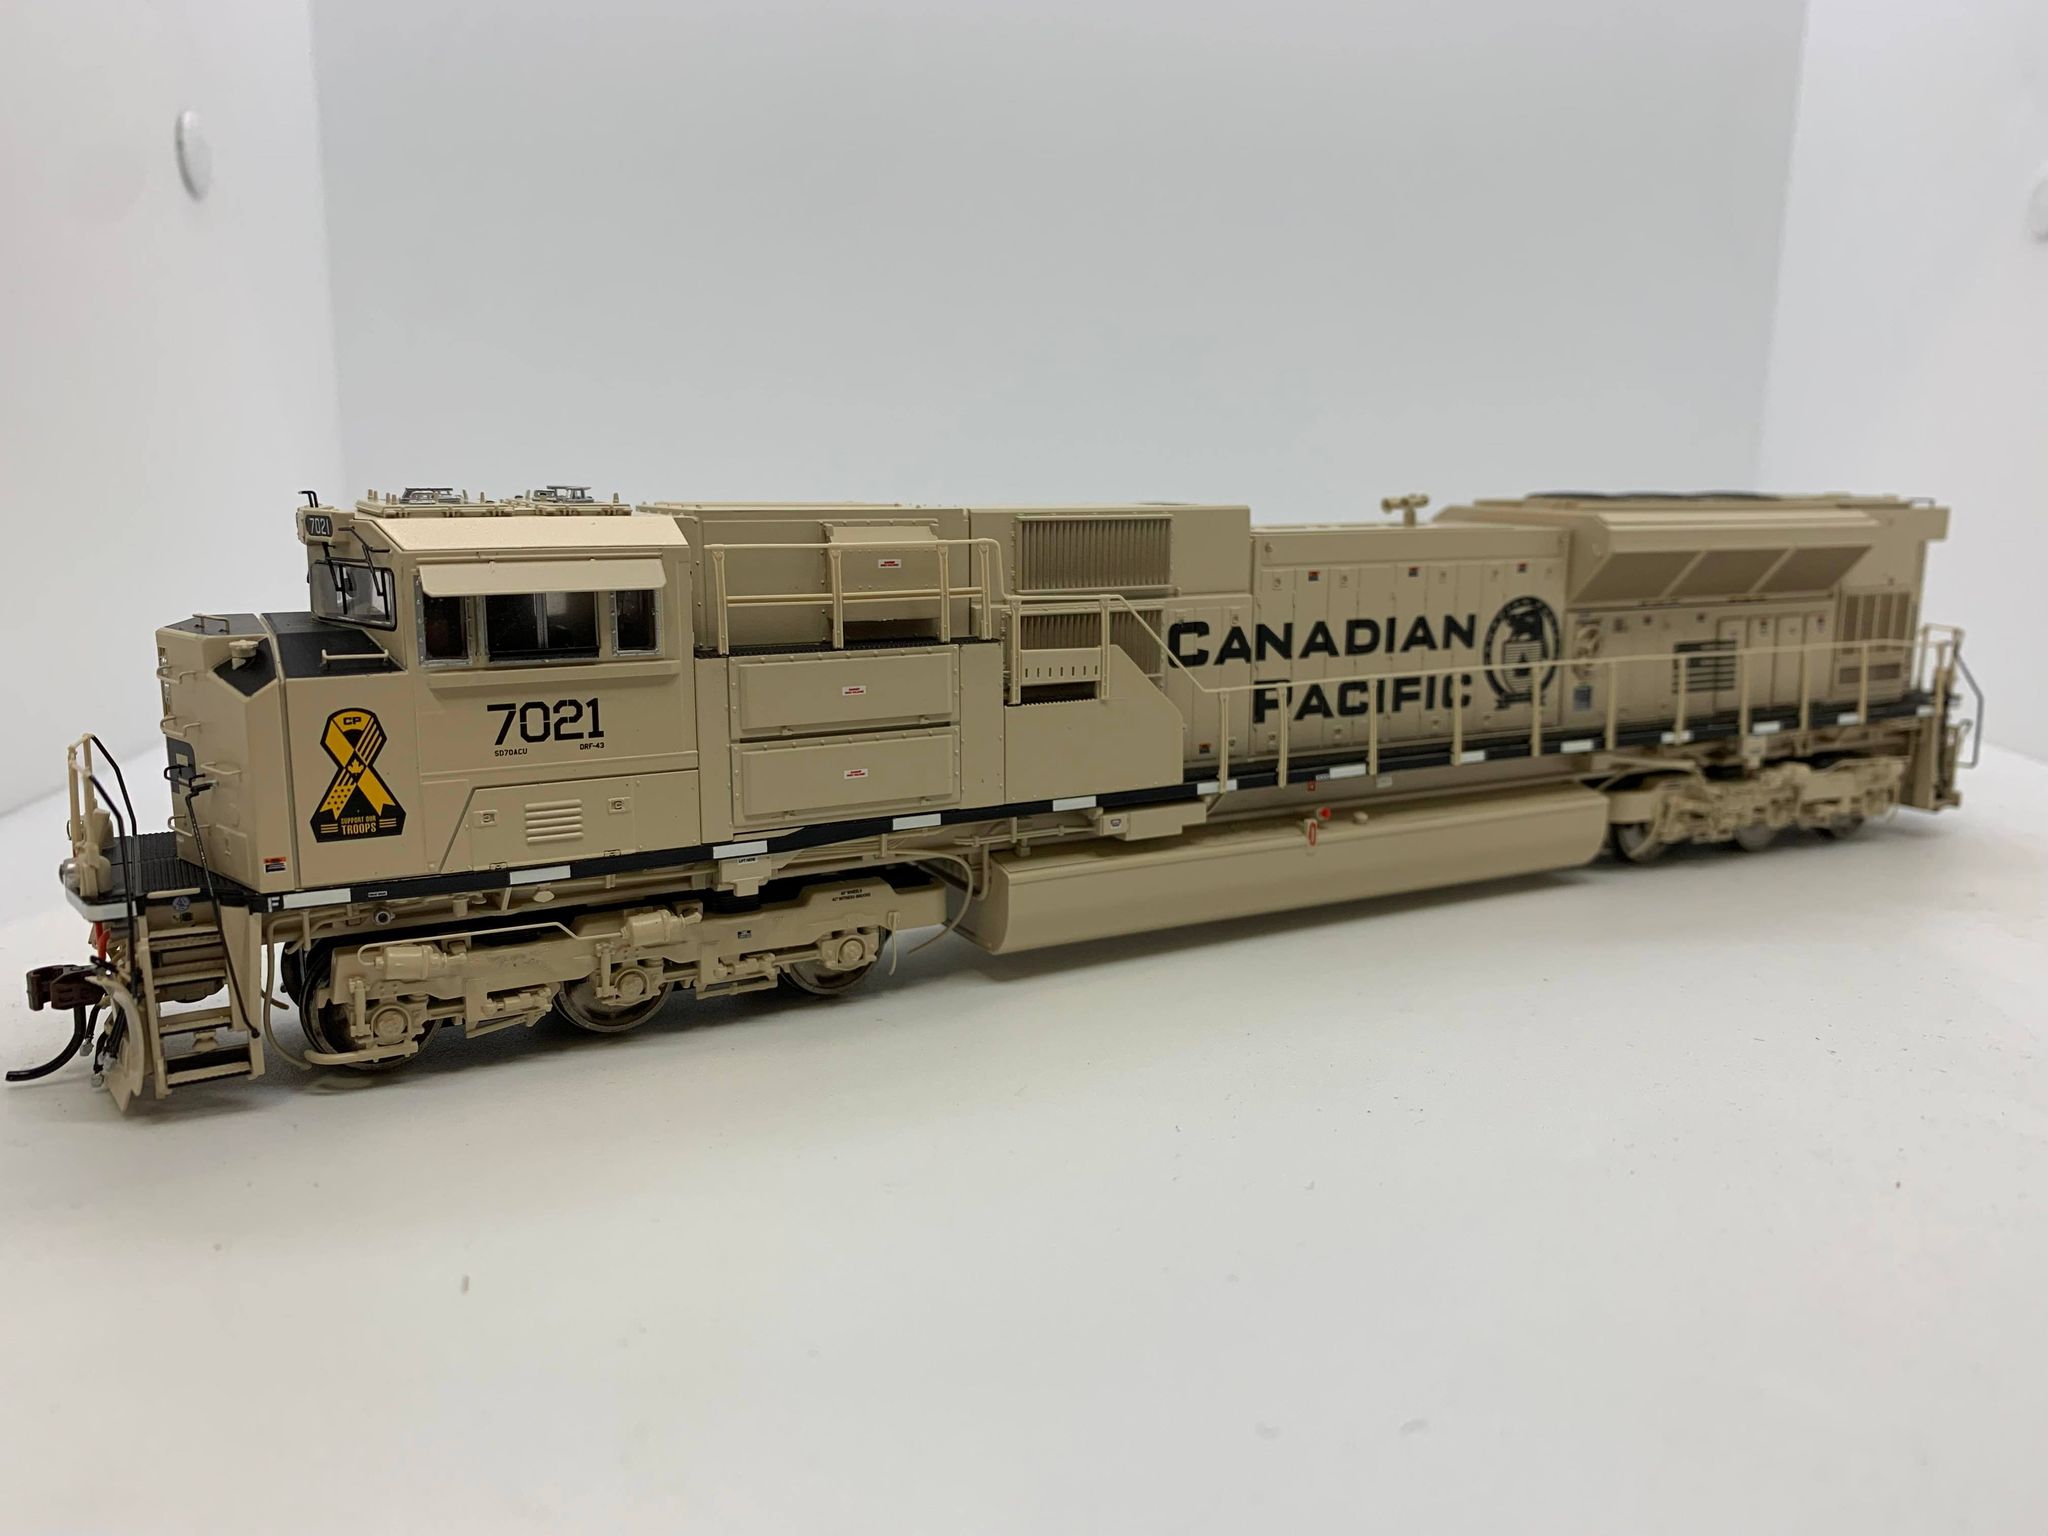 Otter Valley Railroad Model Trains - Tillsonburg, Ontario Canada ...